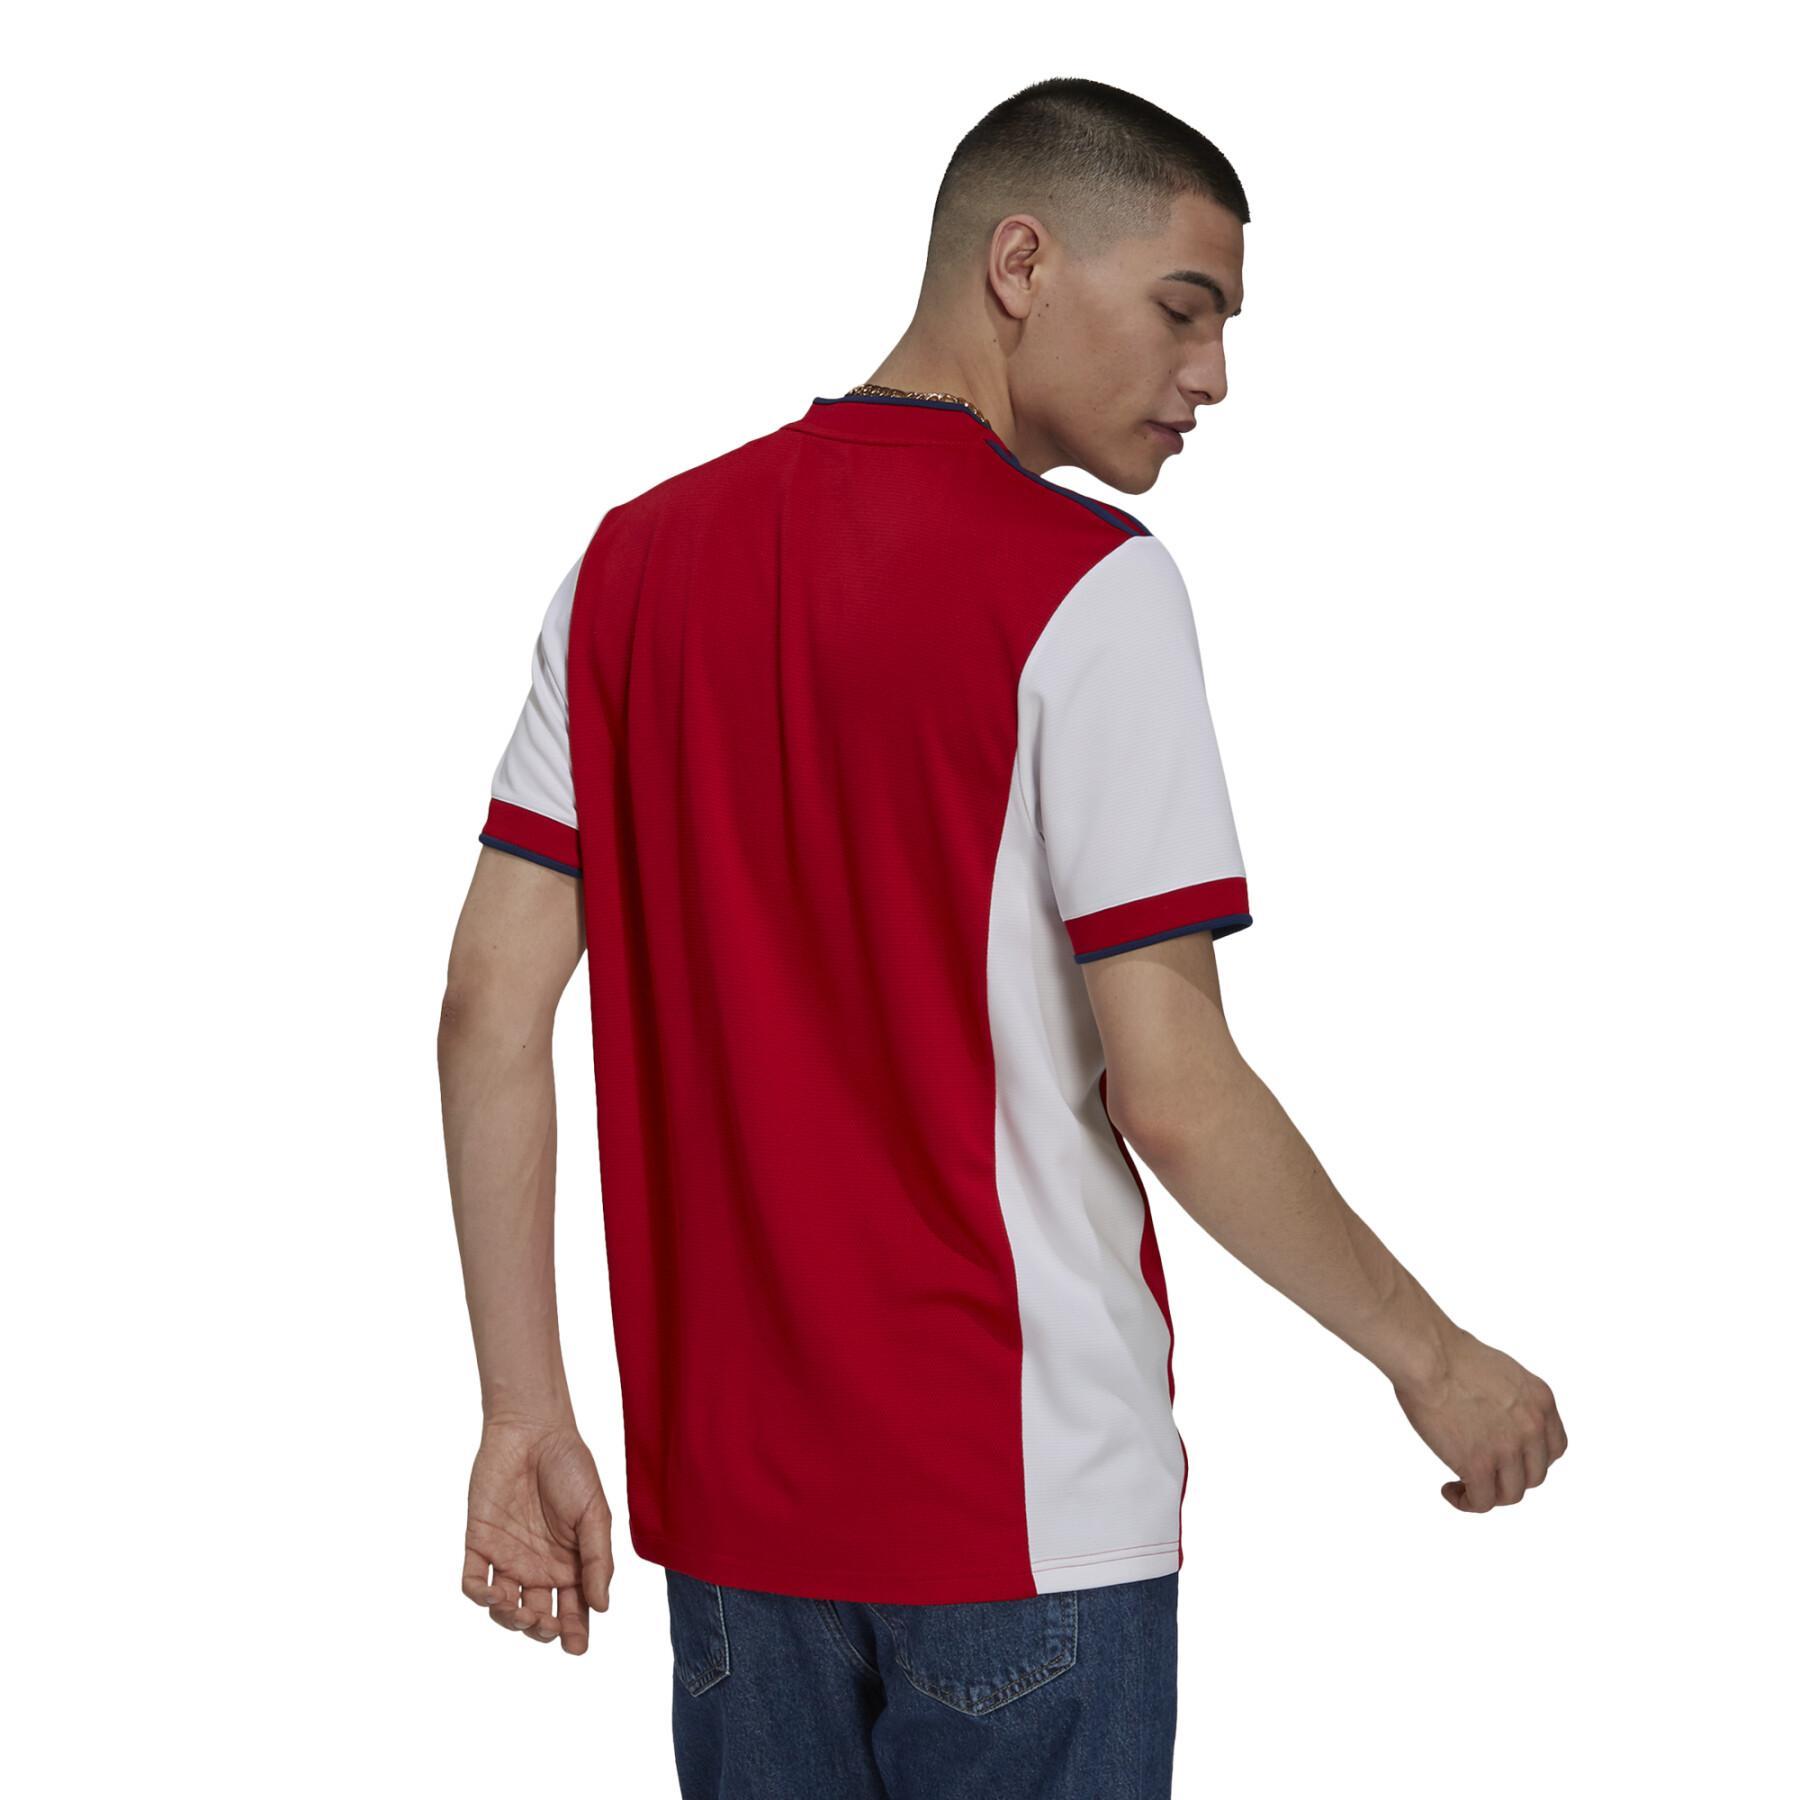 Camiseta primera equipación Arsenal 2021/22